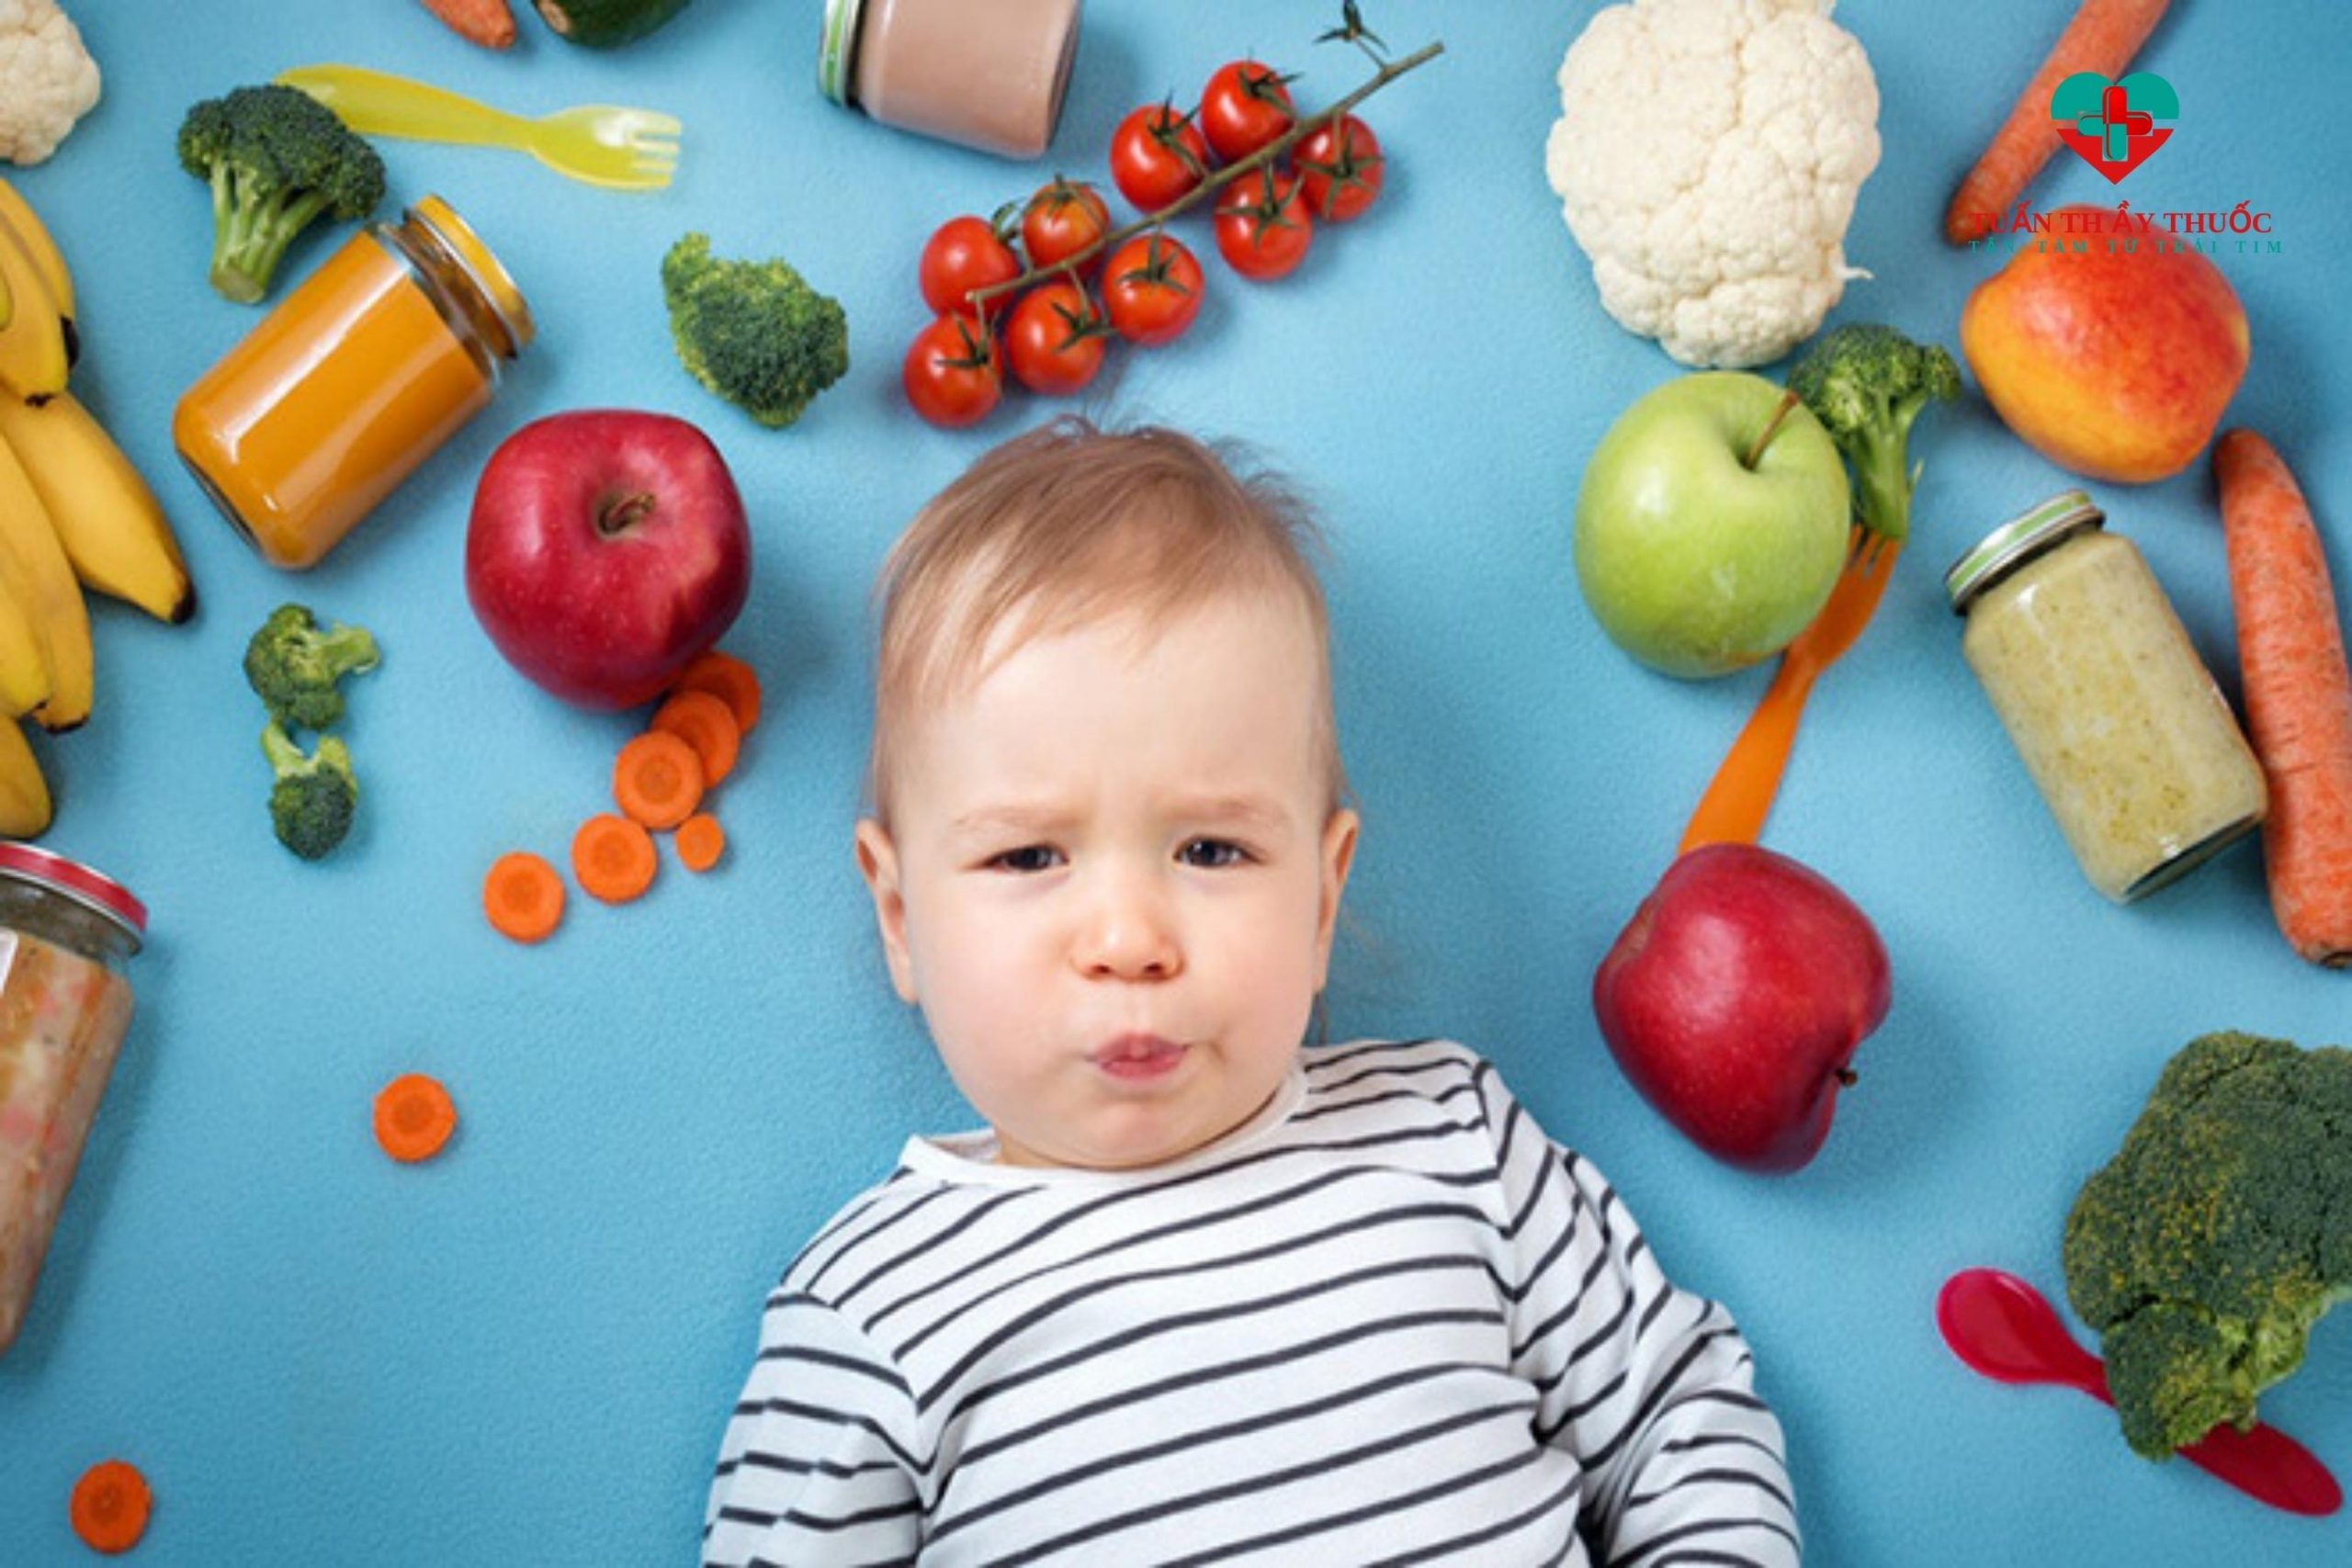 Trẻ bị đau bụng rối loạn tiêu hóa do chế độ dinh dưỡng chưa hợp lý